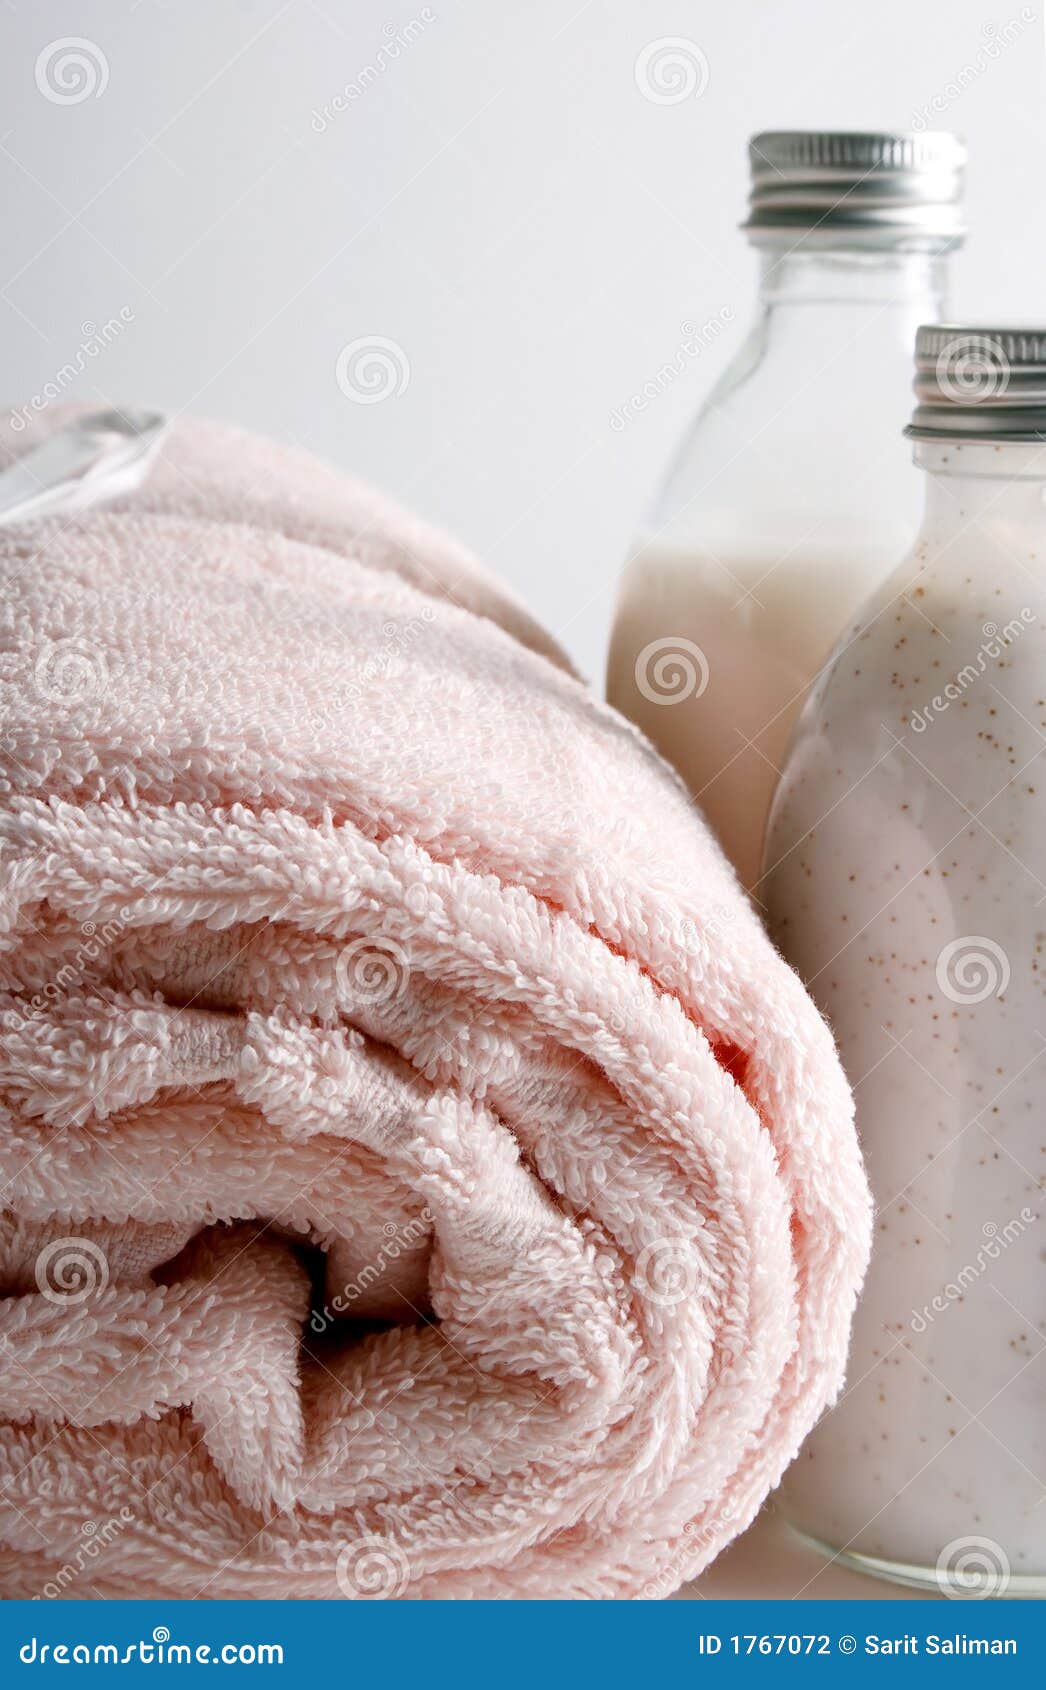 Шампунь полотенце. Шампунь и полотенце. Мыло полотенце шампунь. На белой машинке автомат красово шампунь и полотенца. Подарить полотенце и шампунь принцесса.